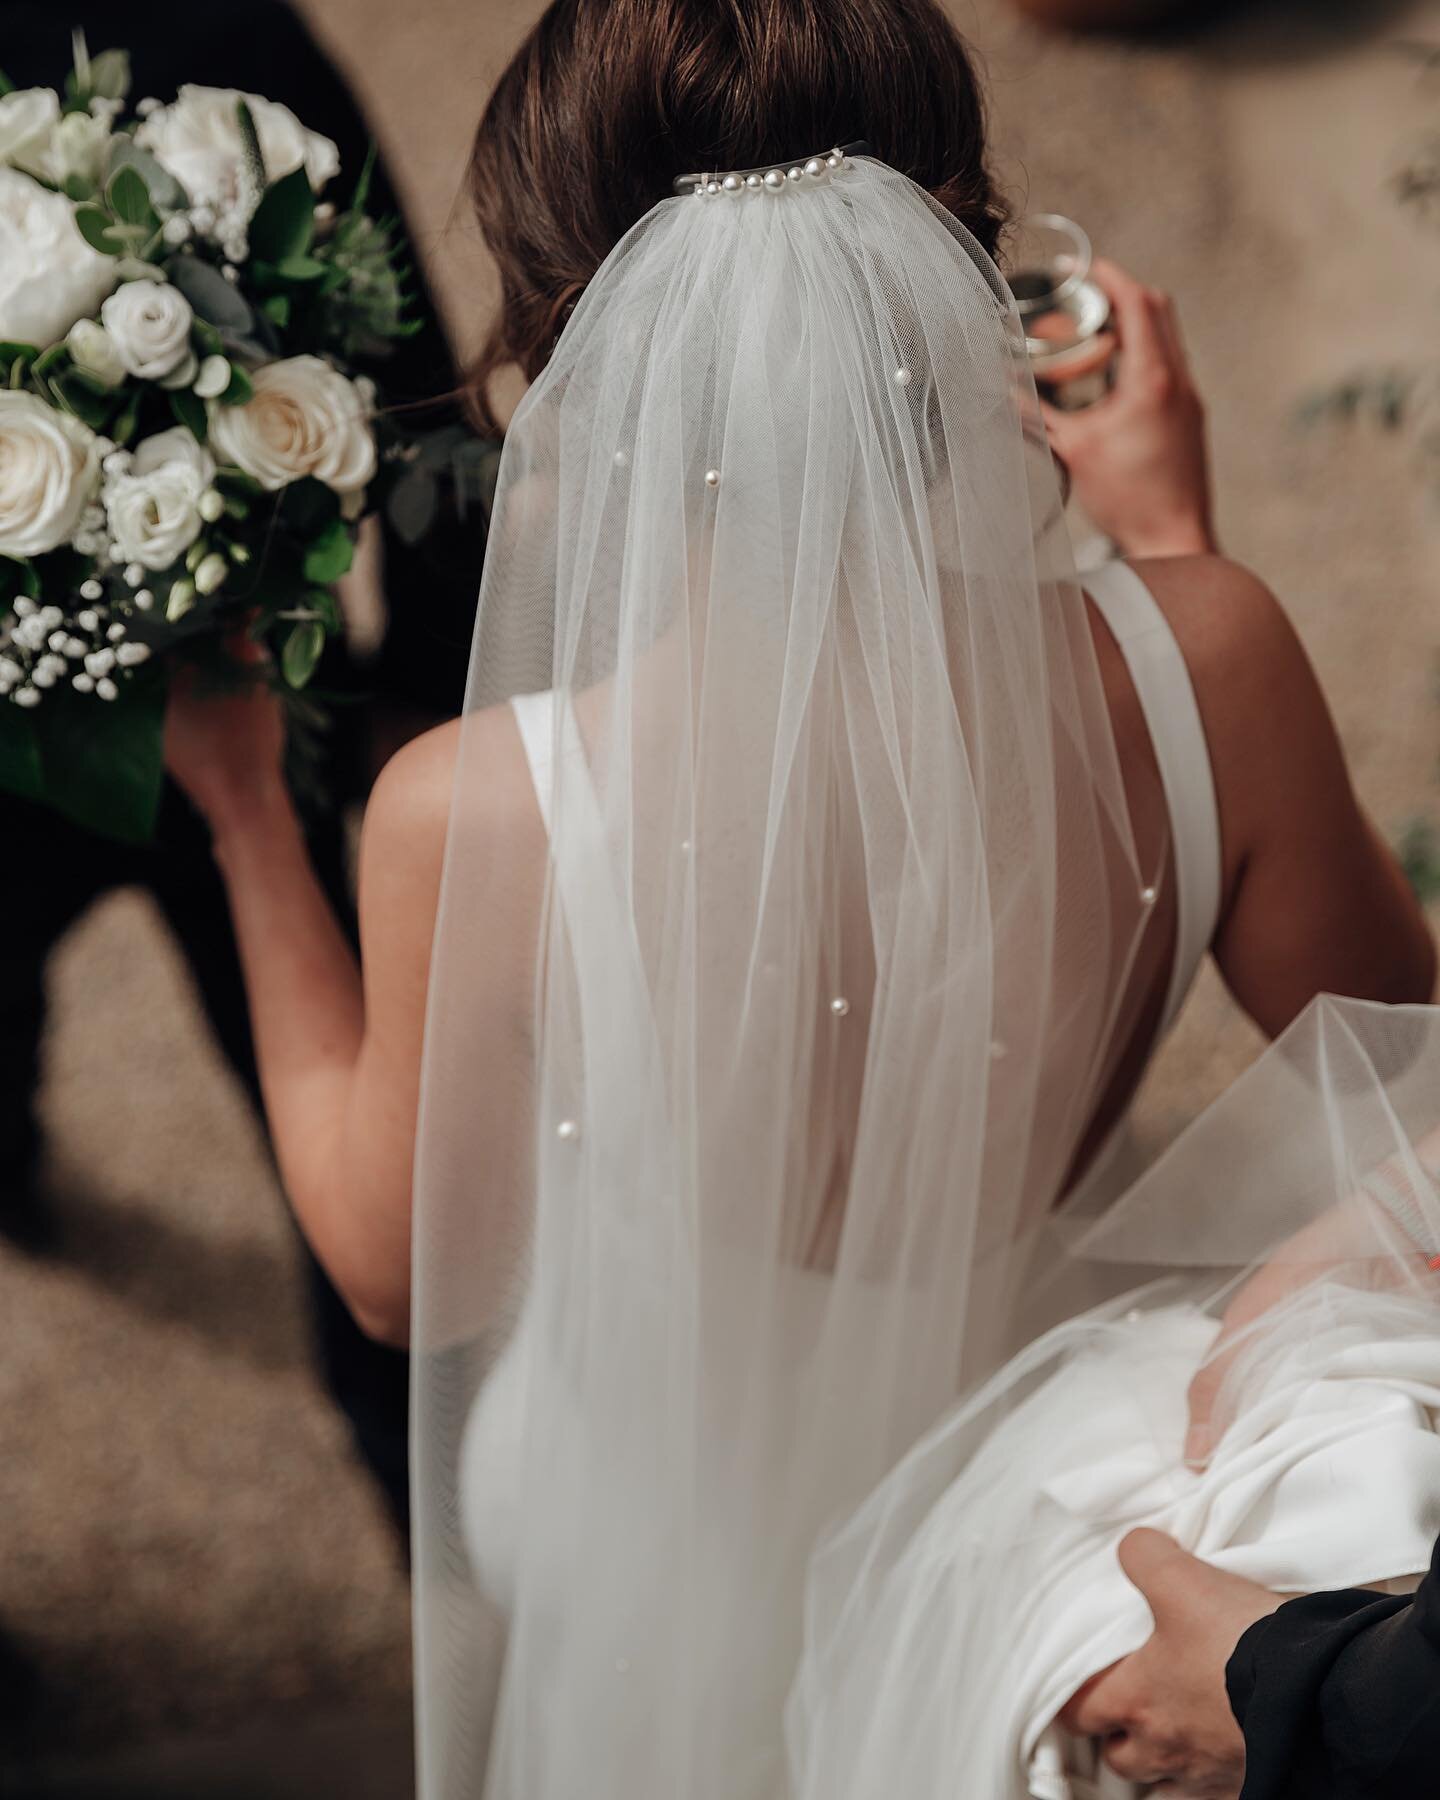 Details ✨ #wedding #weddingdress #veil #weddingphotography #weddingphotographer #newcastle #northernbride #northernwedding